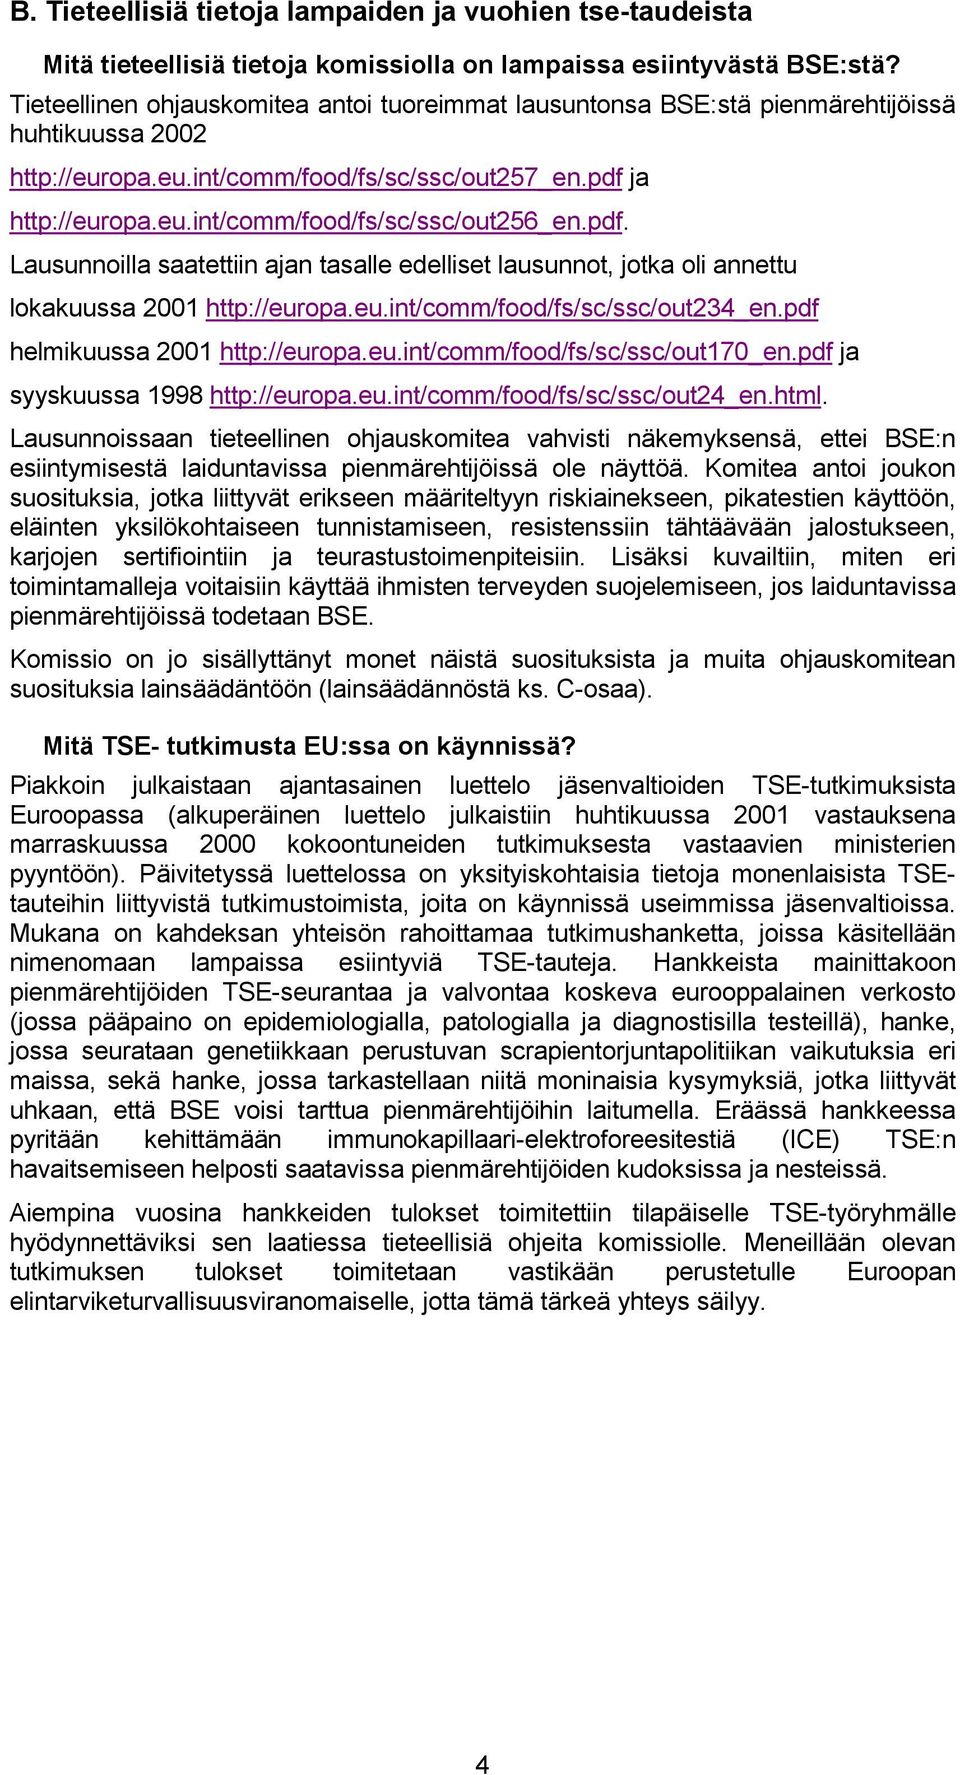 pdf. Lausunnoilla saatettiin ajan tasalle edelliset lausunnot, jotka oli annettu lokakuussa 2001 http://europa.eu.int/comm/food/fs/sc/ssc/out234_en.pdf helmikuussa 2001 http://europa.eu.int/comm/food/fs/sc/ssc/out170_en.